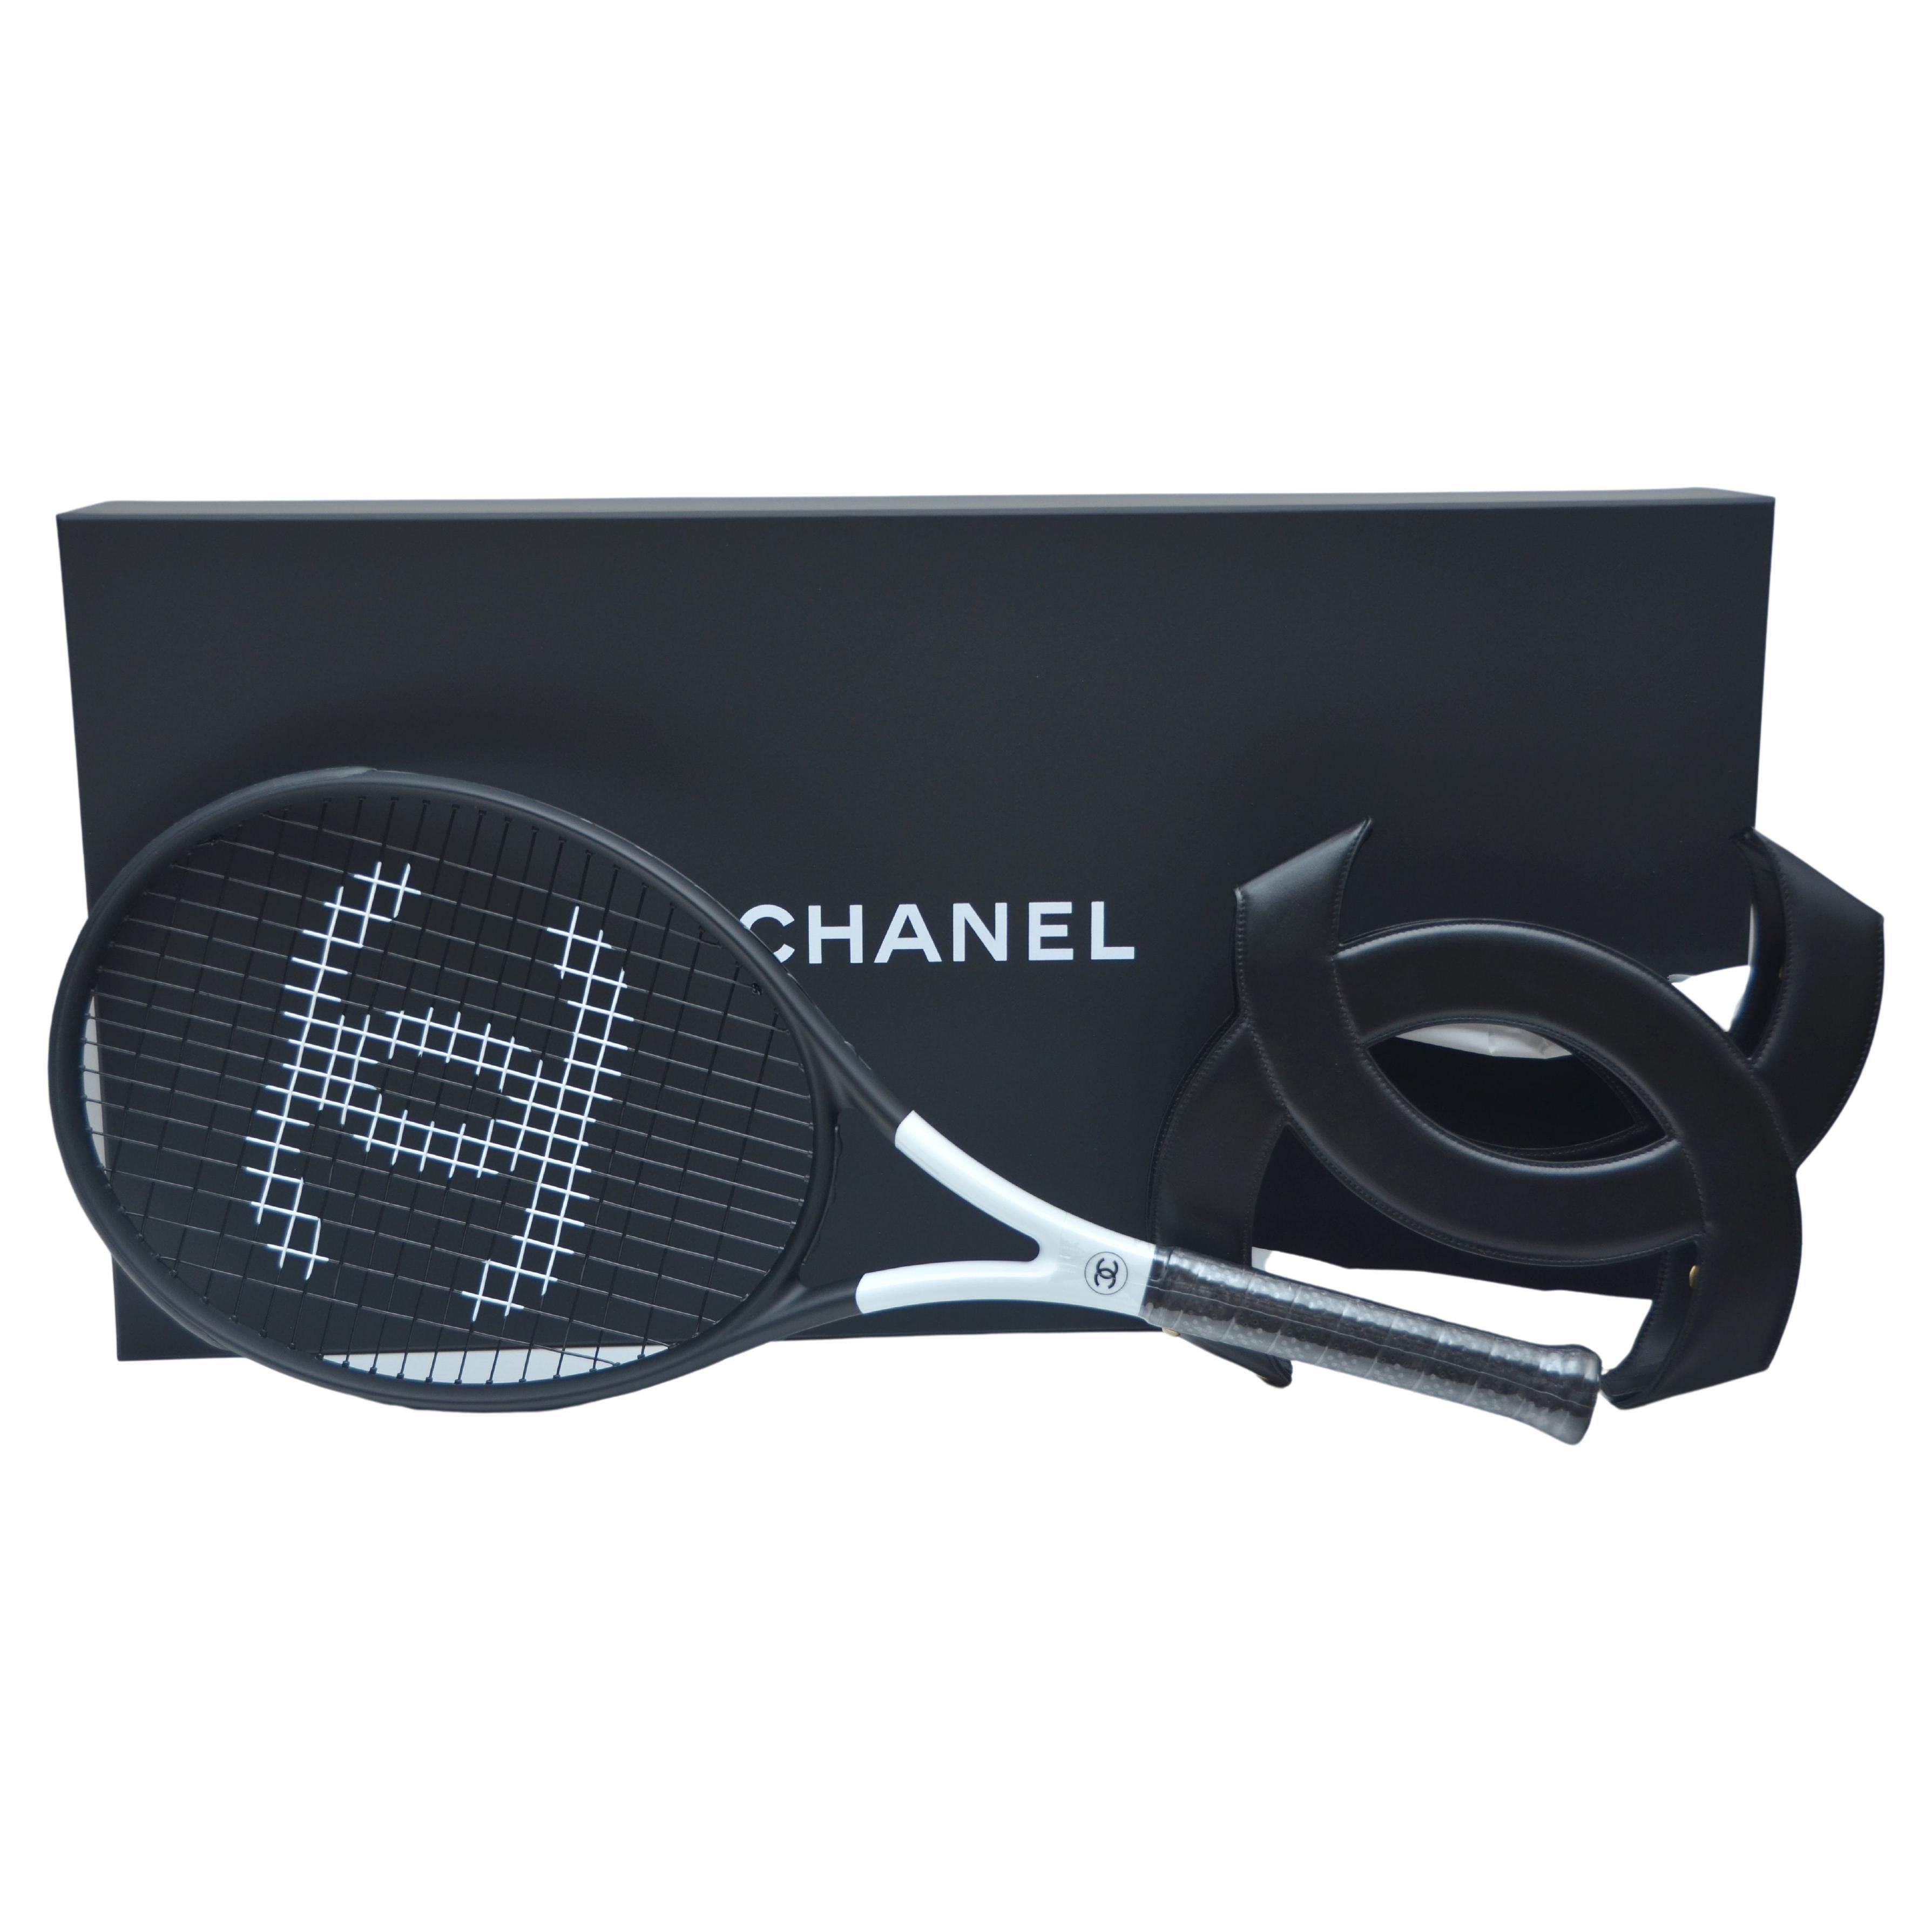 Chanel Tennis Bag - 4 For Sale on 1stDibs  tennis chanel bag, chanel  tennis bag 2023, chanel tennis bag mini